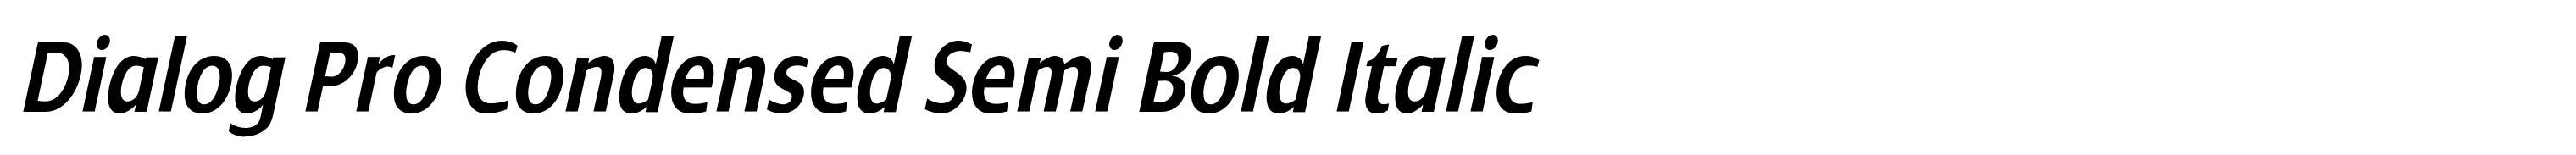 Dialog Pro Condensed Semi Bold Italic